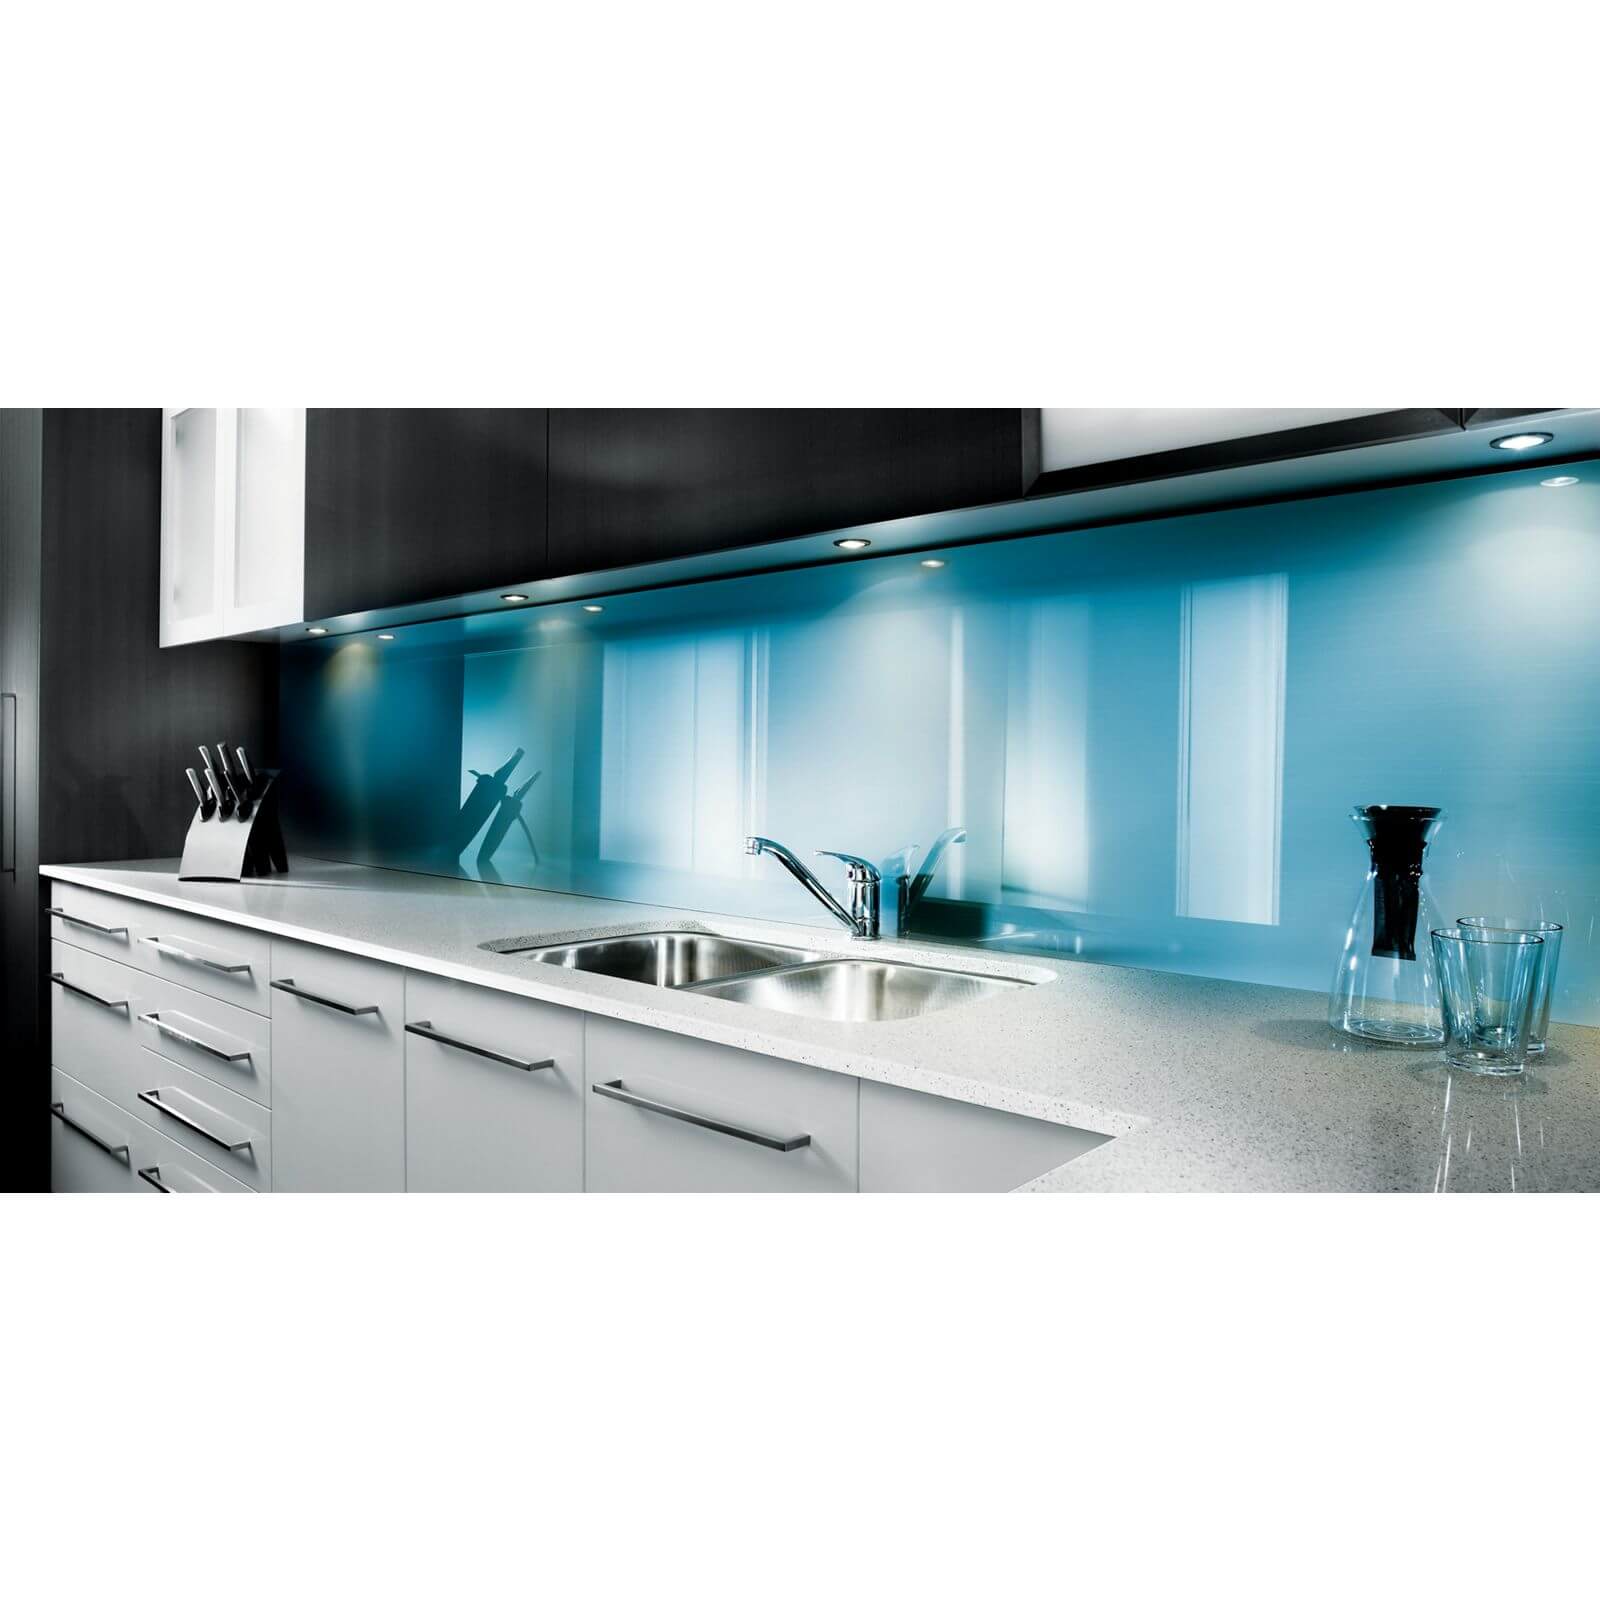 Zenolite Acrylic Kitchen Splashback Panel - 760 x 700mm - Blue Atoll